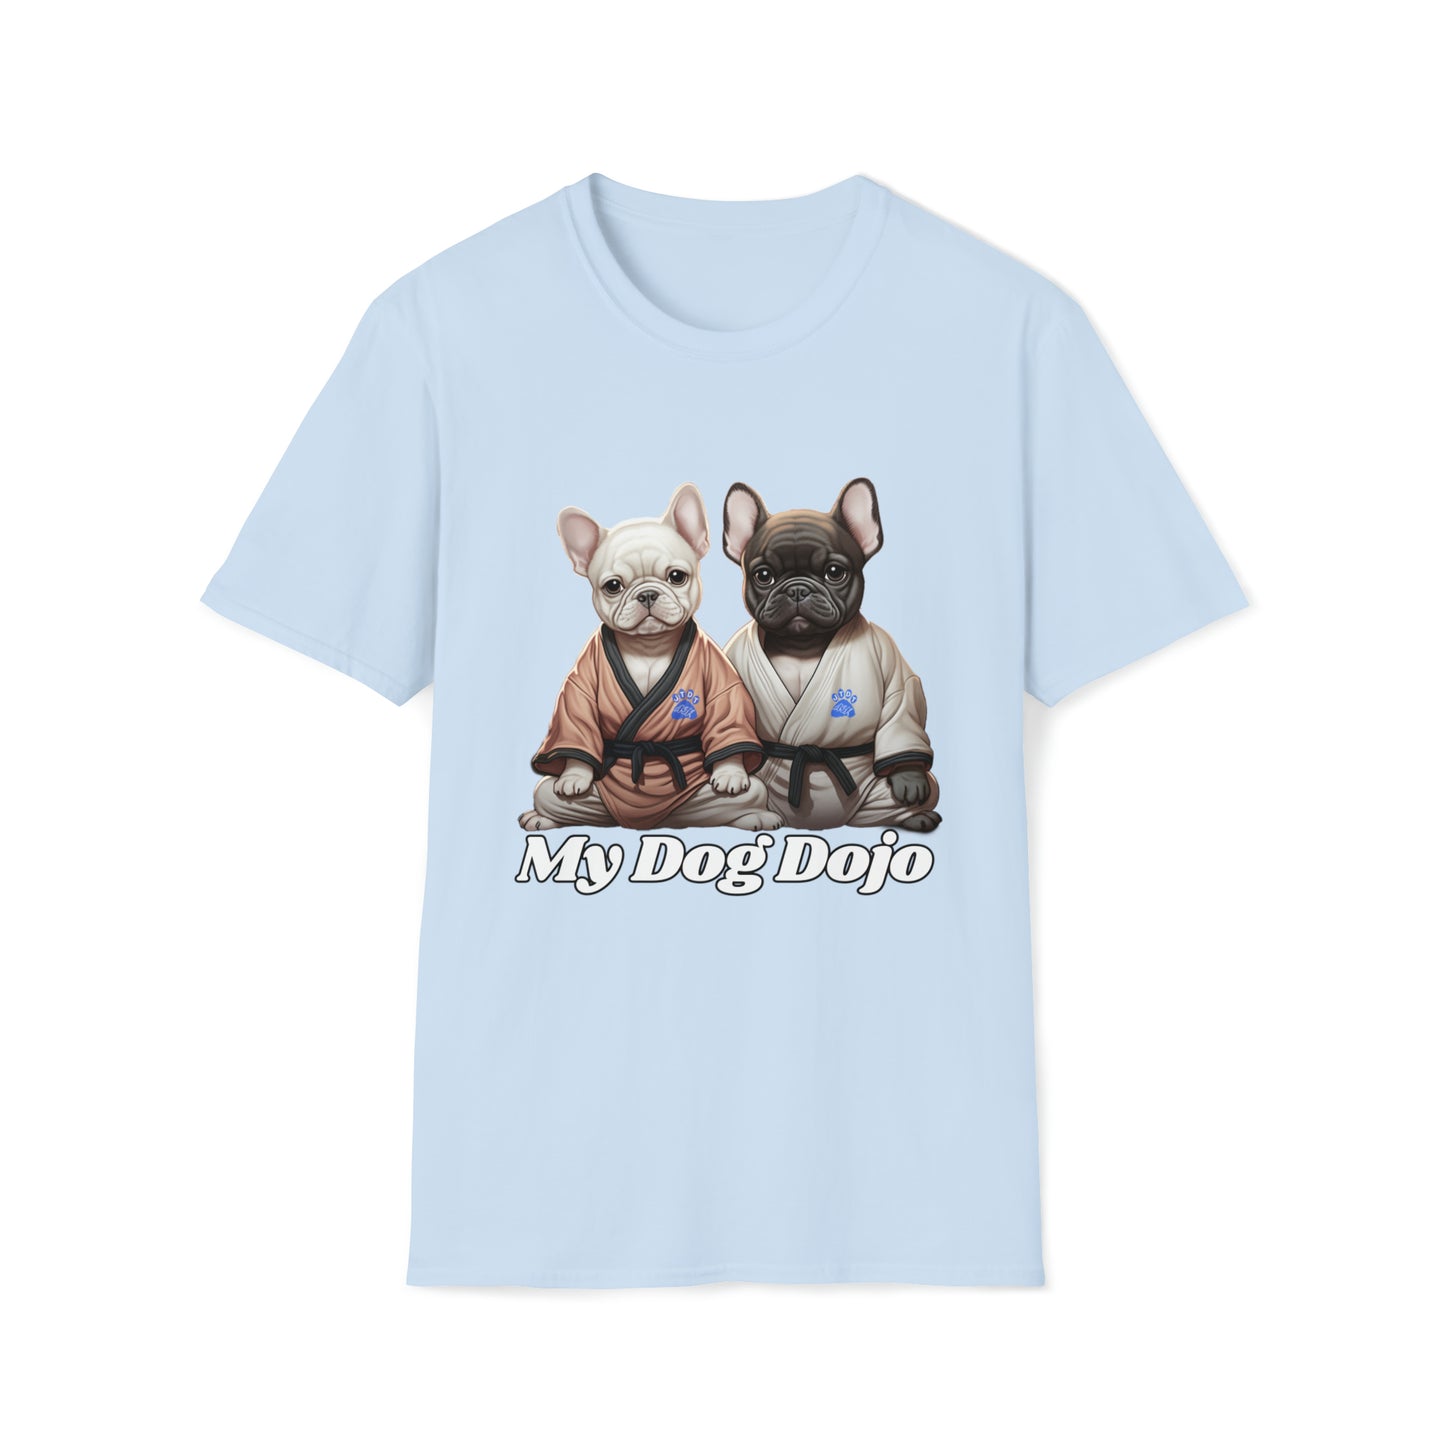 My Dog Dojo -  Unisex Softstyle T-Shirt